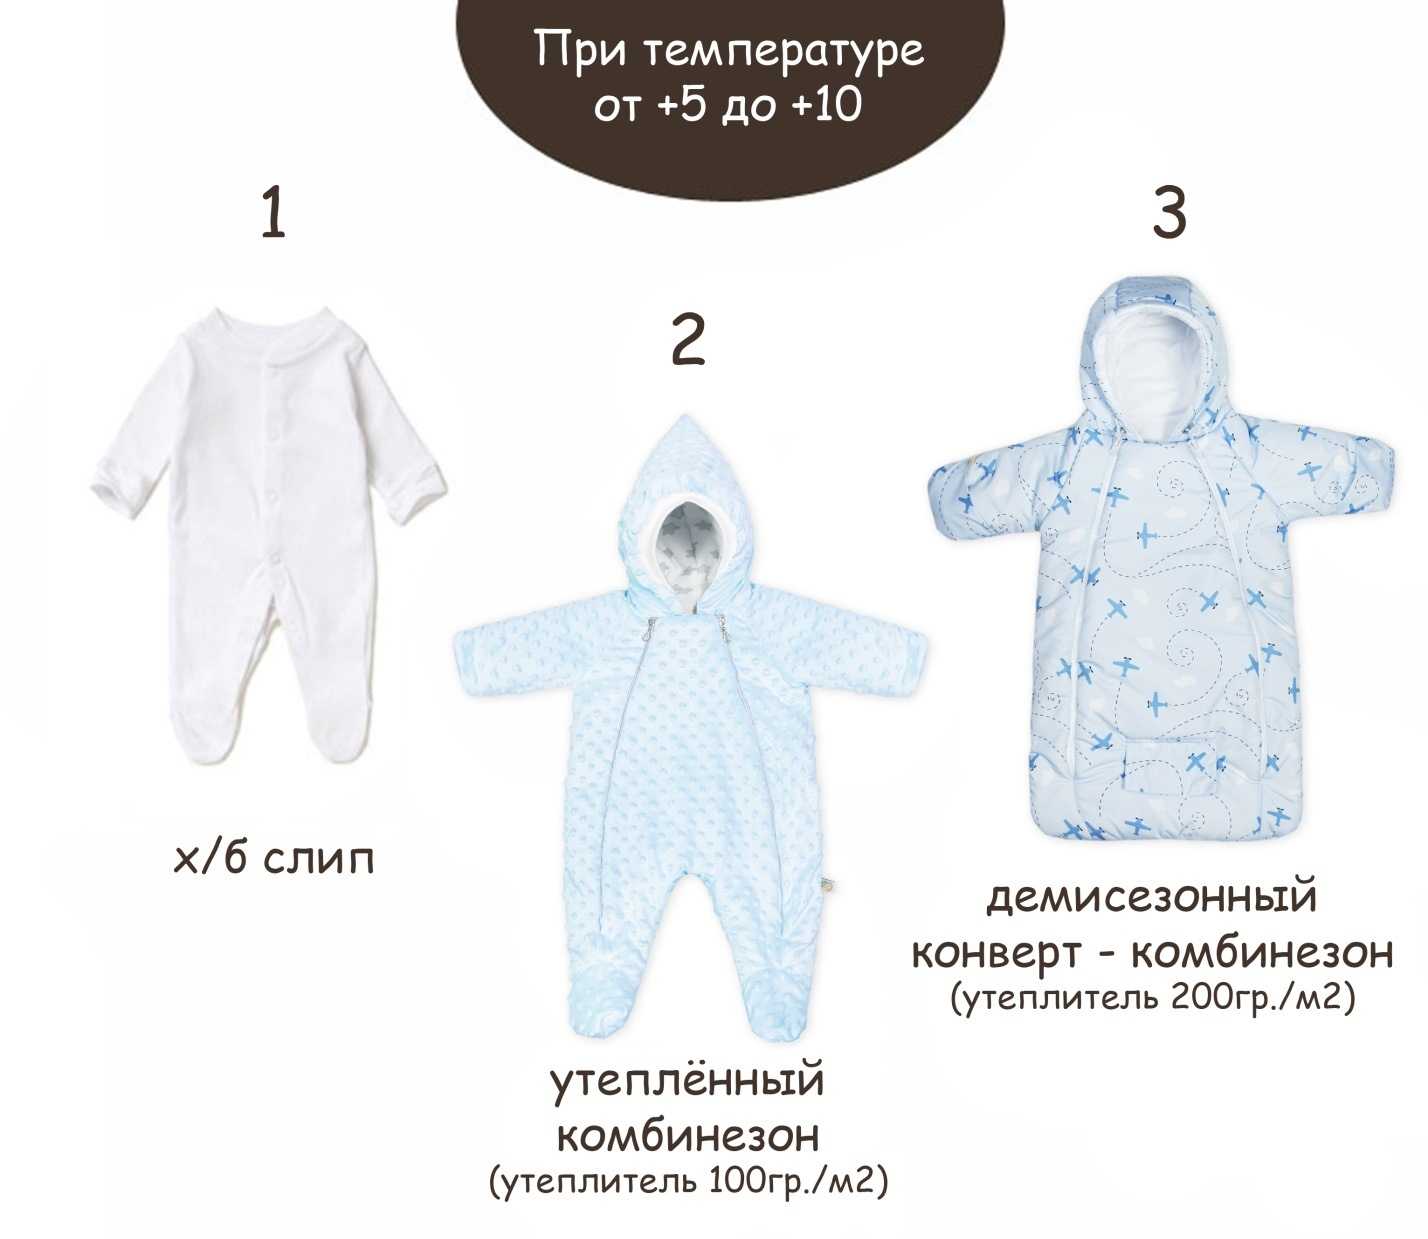 Зимняя одежда для малыша должна сочетать в себе множество характеристик для обеспечения тепла, комфорта и привлекательного внешнего вида Но как выбрать одежду, чтобы забрать из роддома ребенка И какой должна быть одежда для новорожденных для выписки зимой